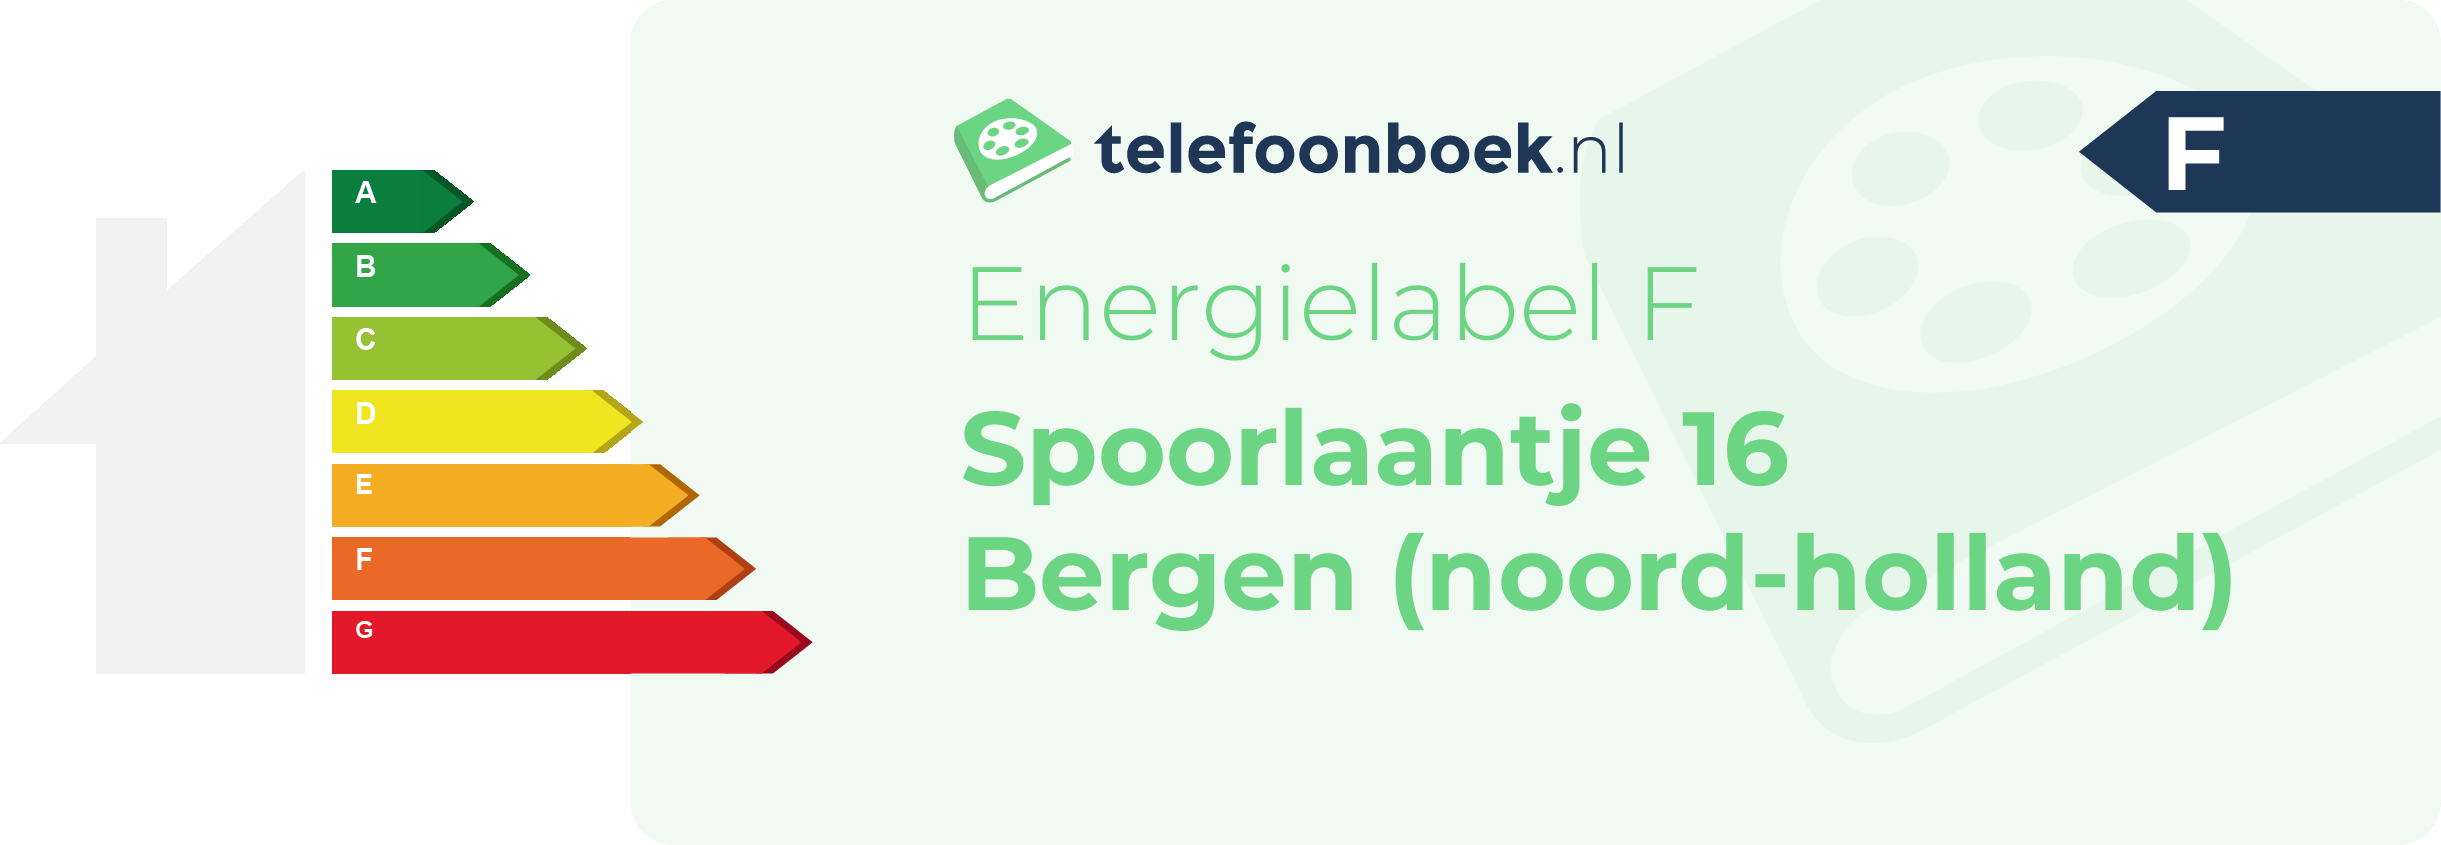 Energielabel Spoorlaantje 16 Bergen (Noord-Holland)